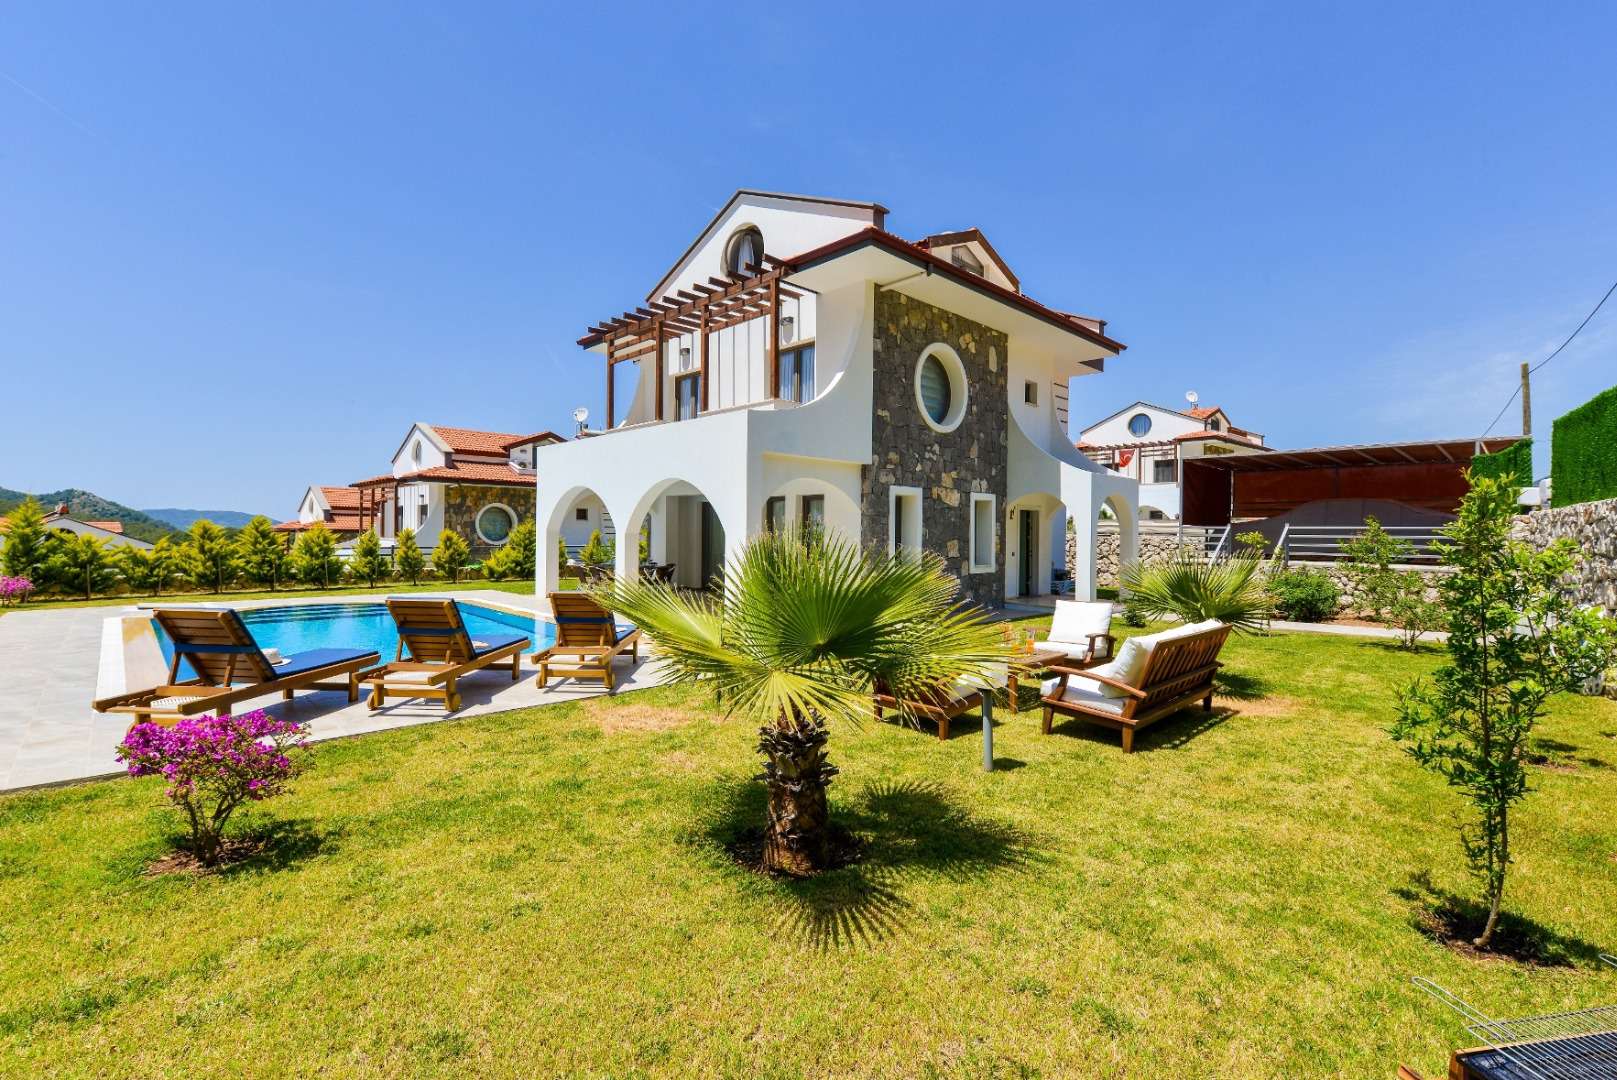 Villa Amore 1, Fethiye  Hisarönü Bölgesinde 8 Kişilik Kiralık Villa